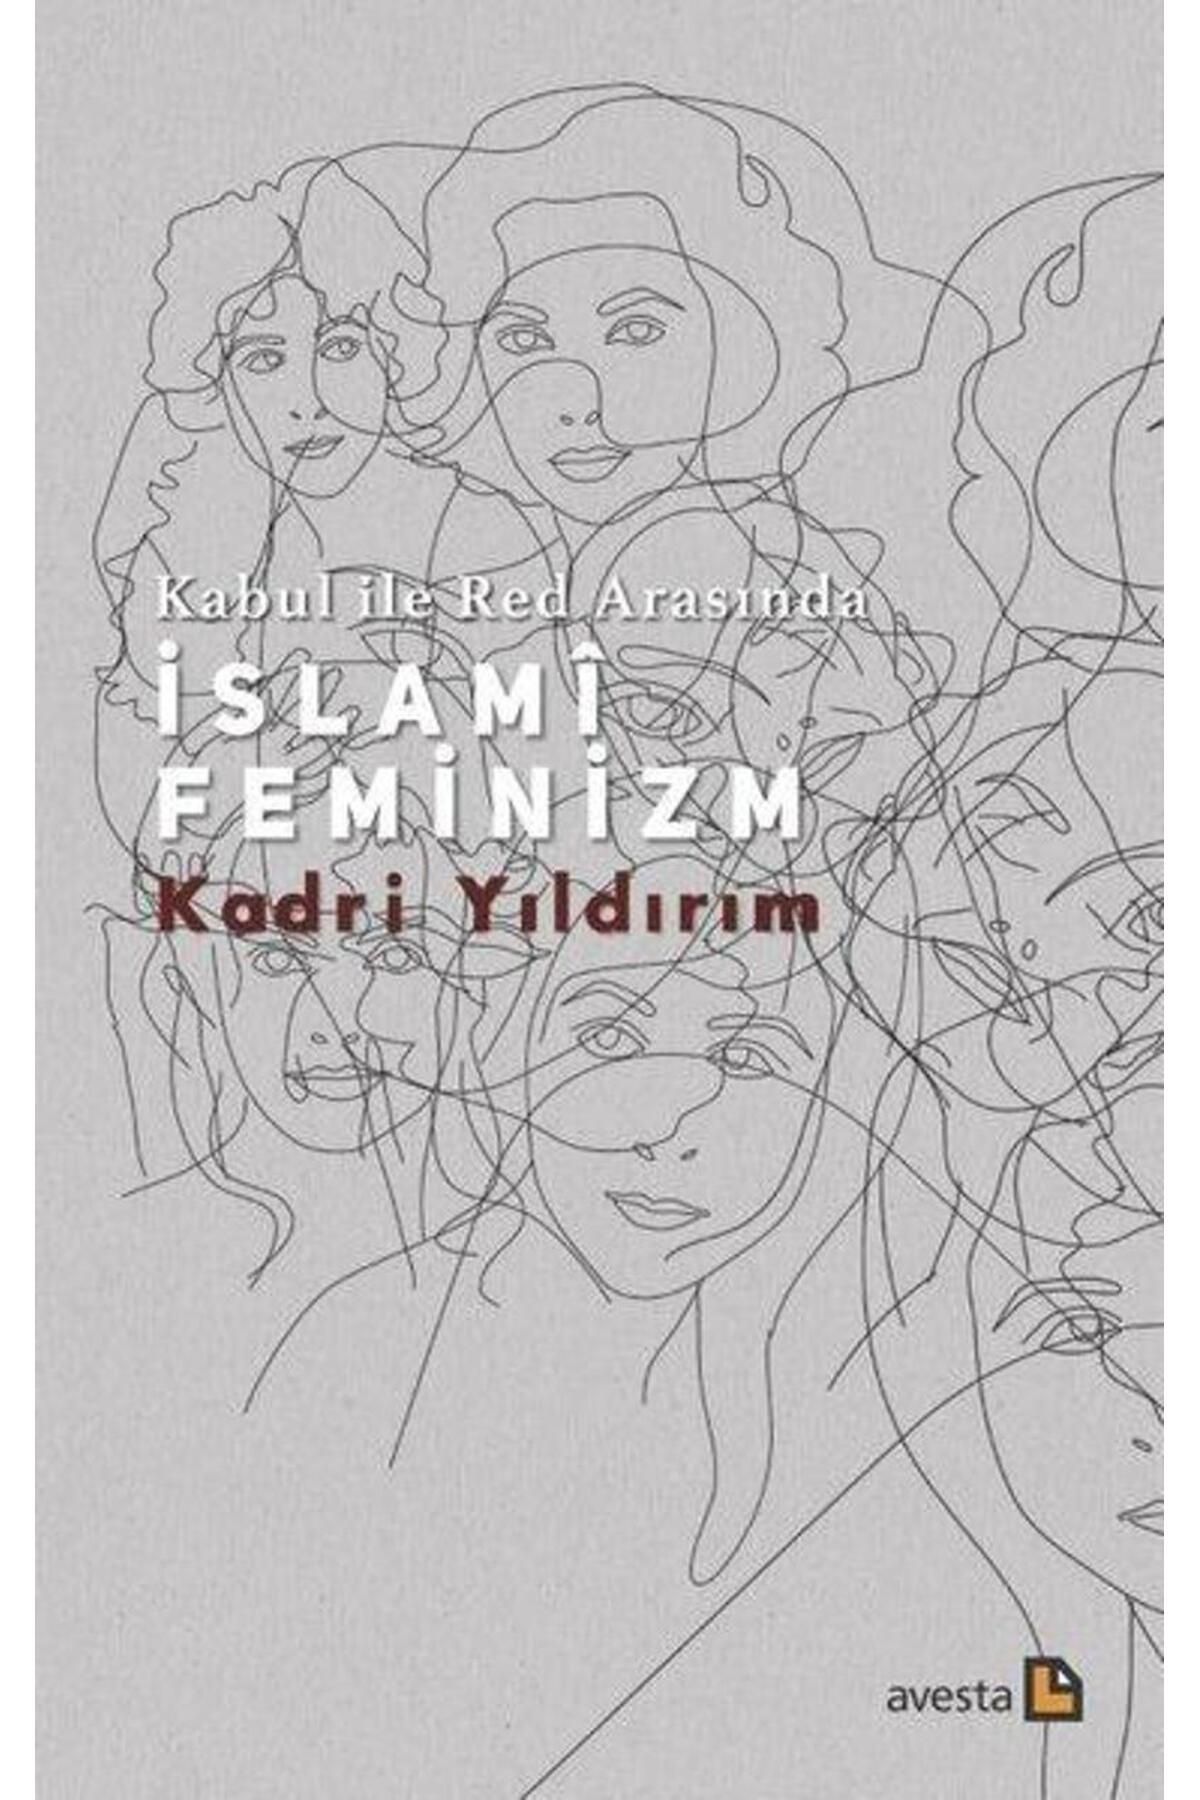 Avesta Yayınları Kabul İle Red Arasında İslami Feminizm